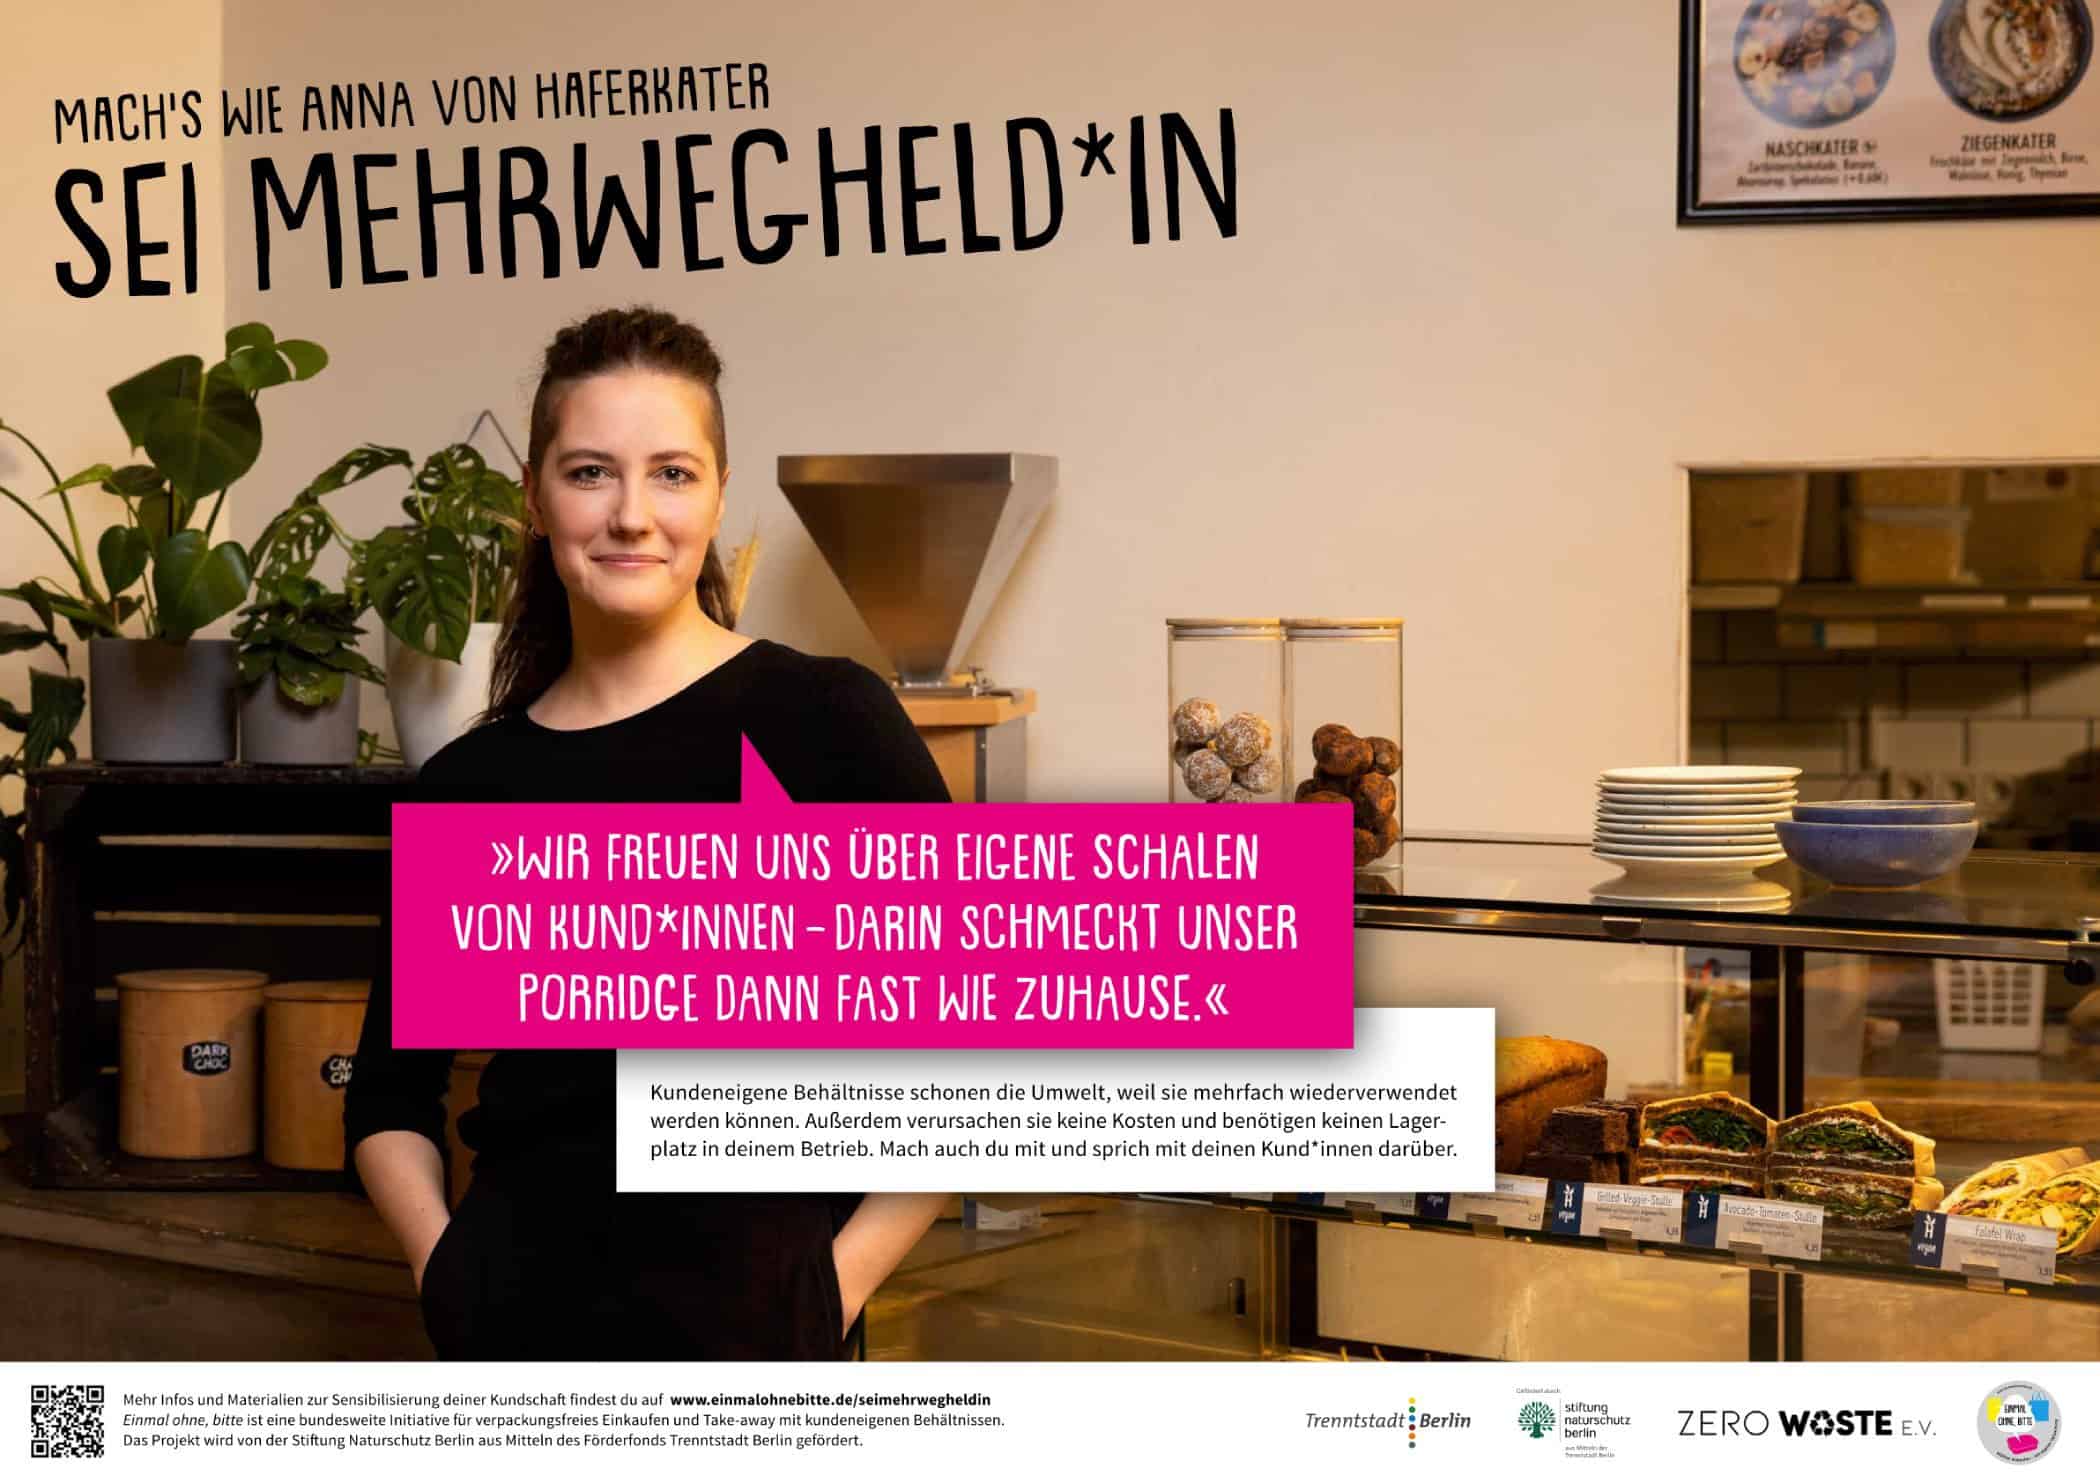 EOB mehrwegheldin haferkater - management, gastronomie, food-nomyblog Mehrwegheld*innen aus der Berliner Gastronomie für Kampagne gesucht!